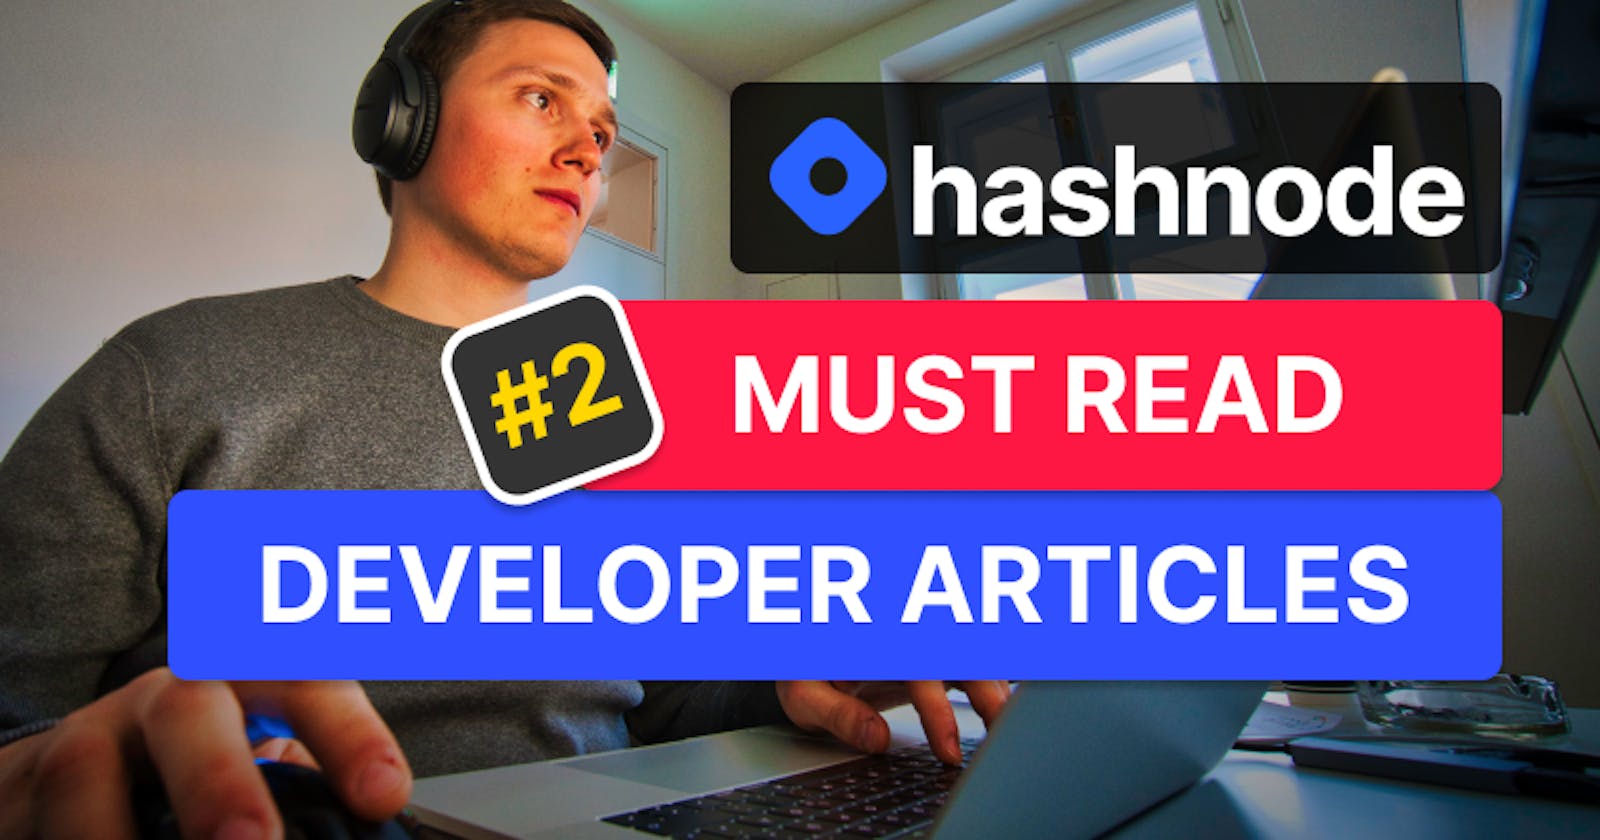 Must Read Developer Articles on Hashnode - #2